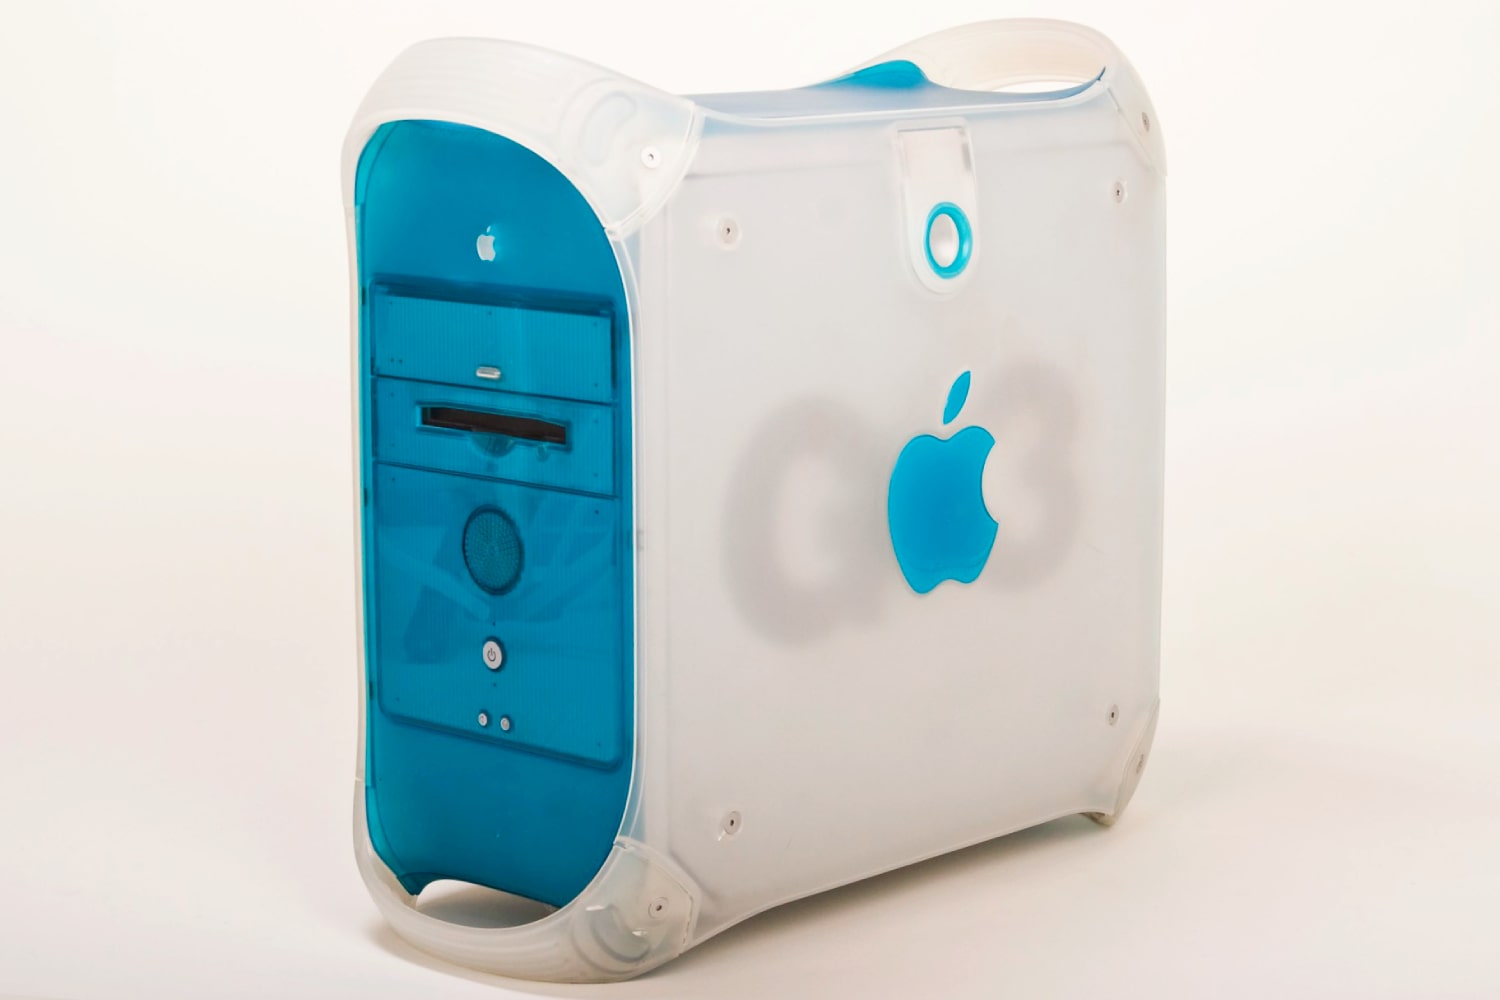 सफ़ेद पृष्ठभूमि पर Apple Power Mac G3 नीला और सफ़ेद।